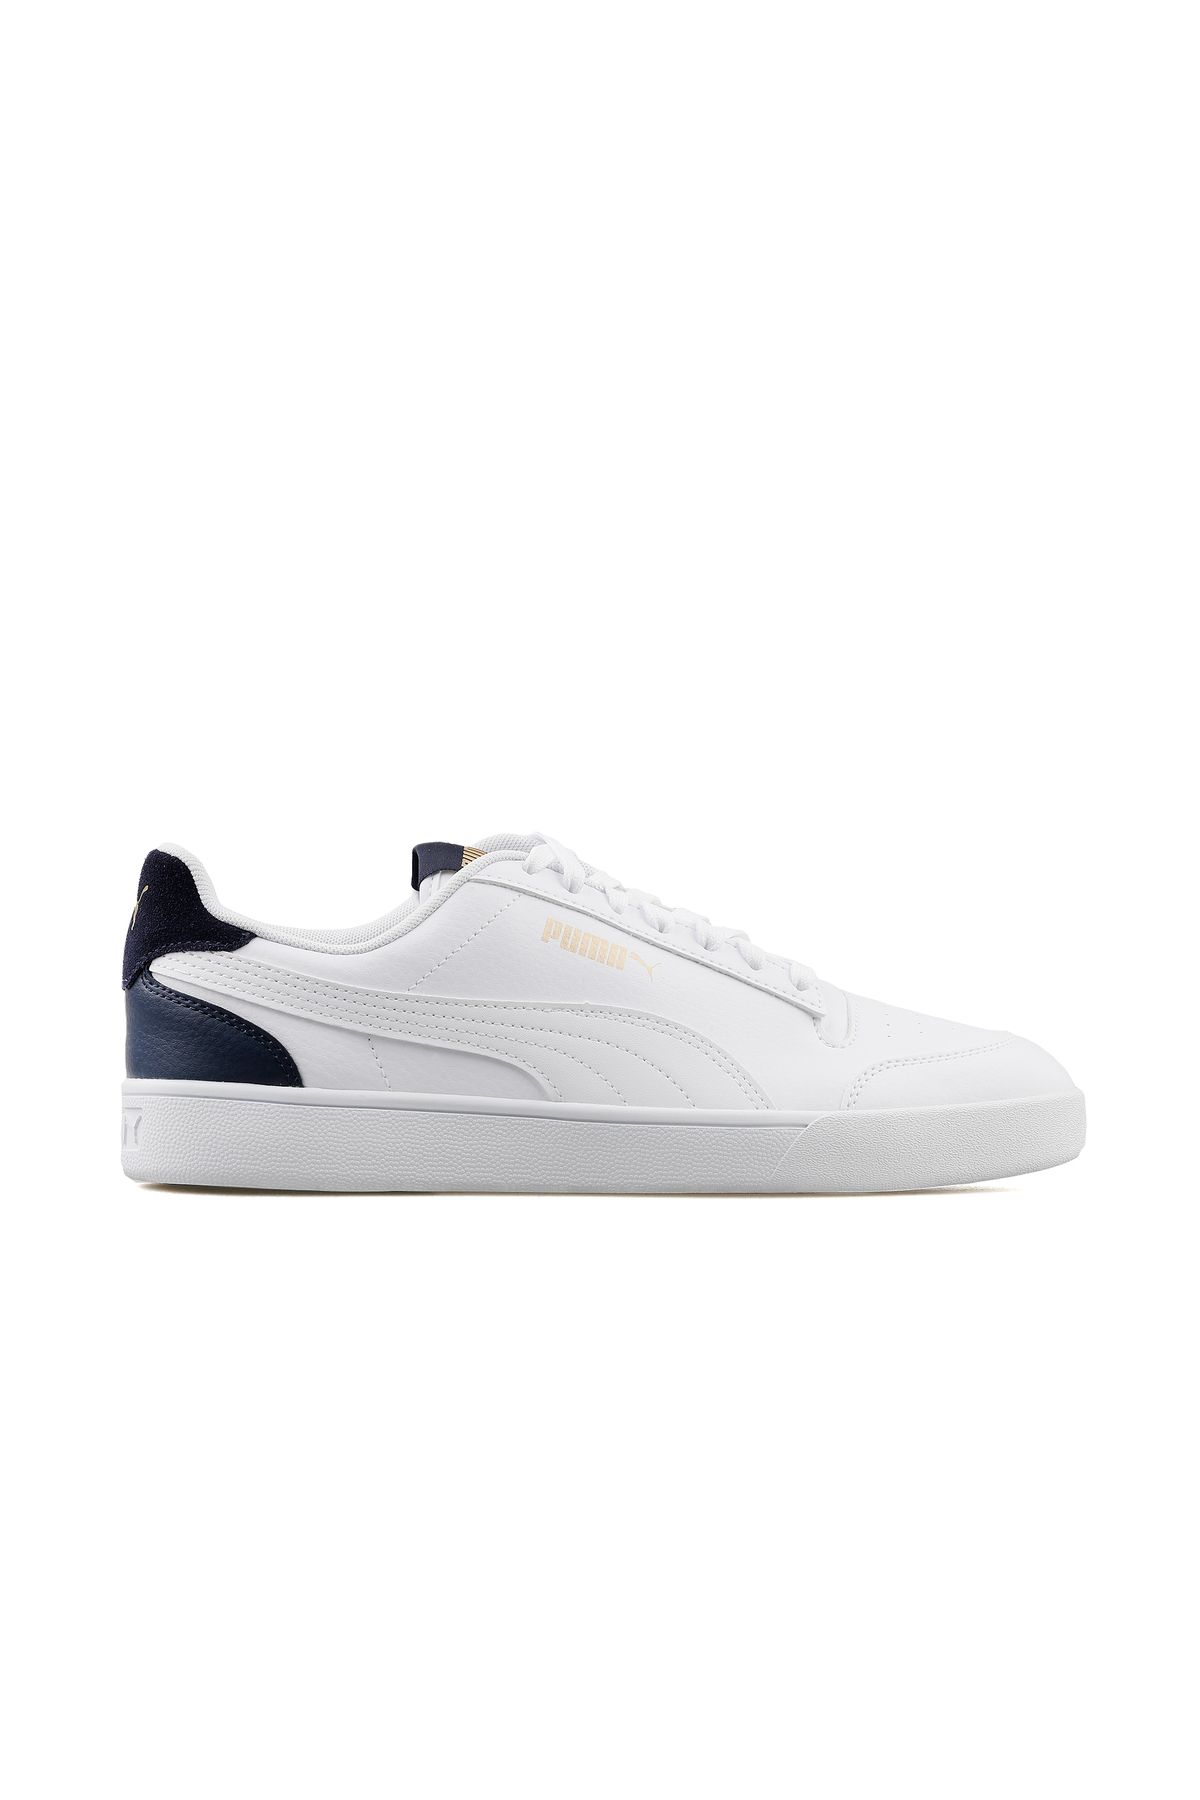 Puma Shuffle Günlük Spor Ayakkabı Sneaker Beyaz